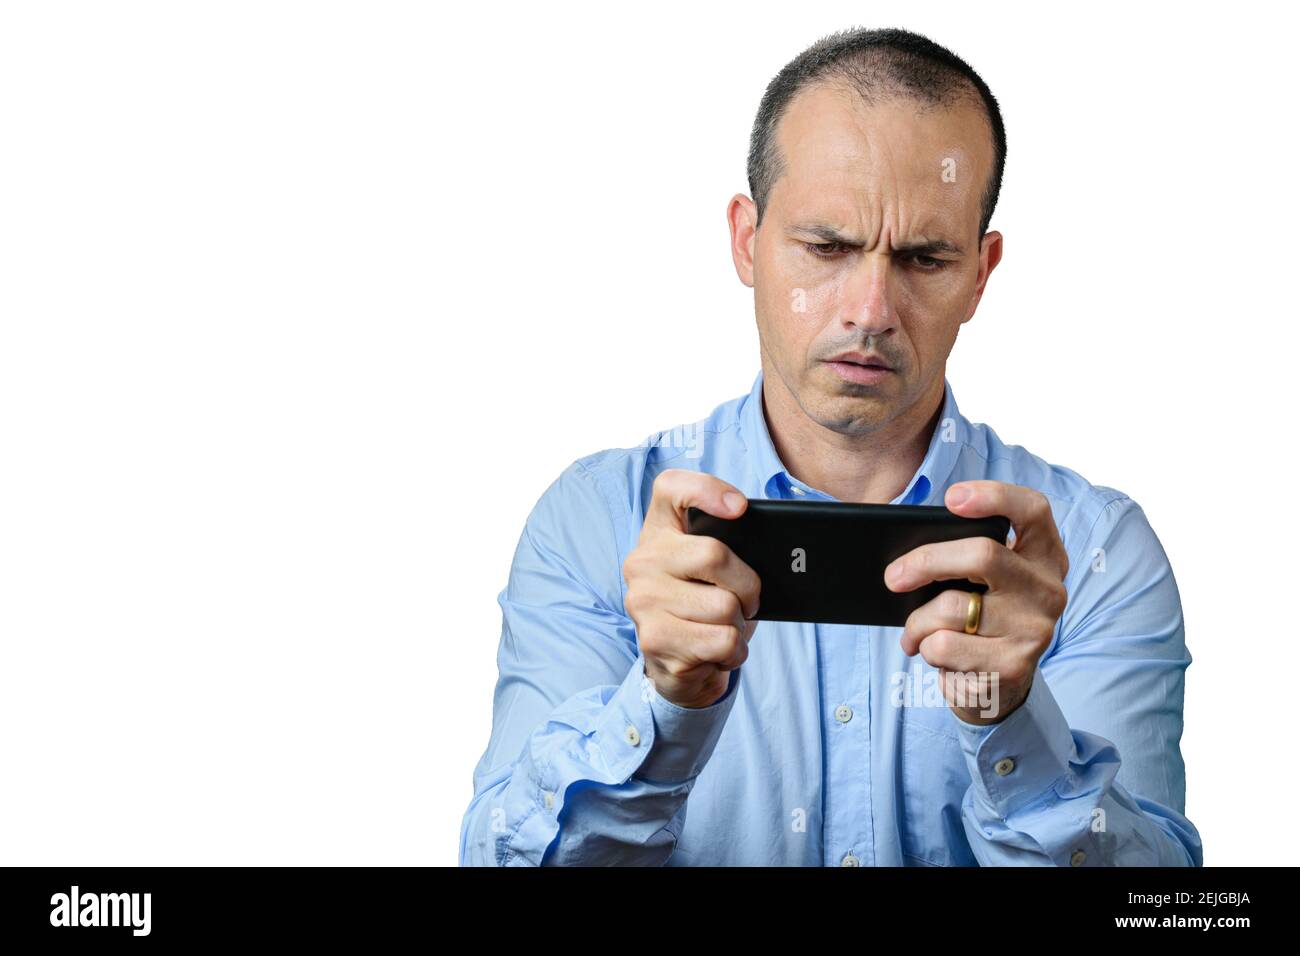 Hombre maduro con ropa formal mirando su smartphone y muy triste. Foto de stock